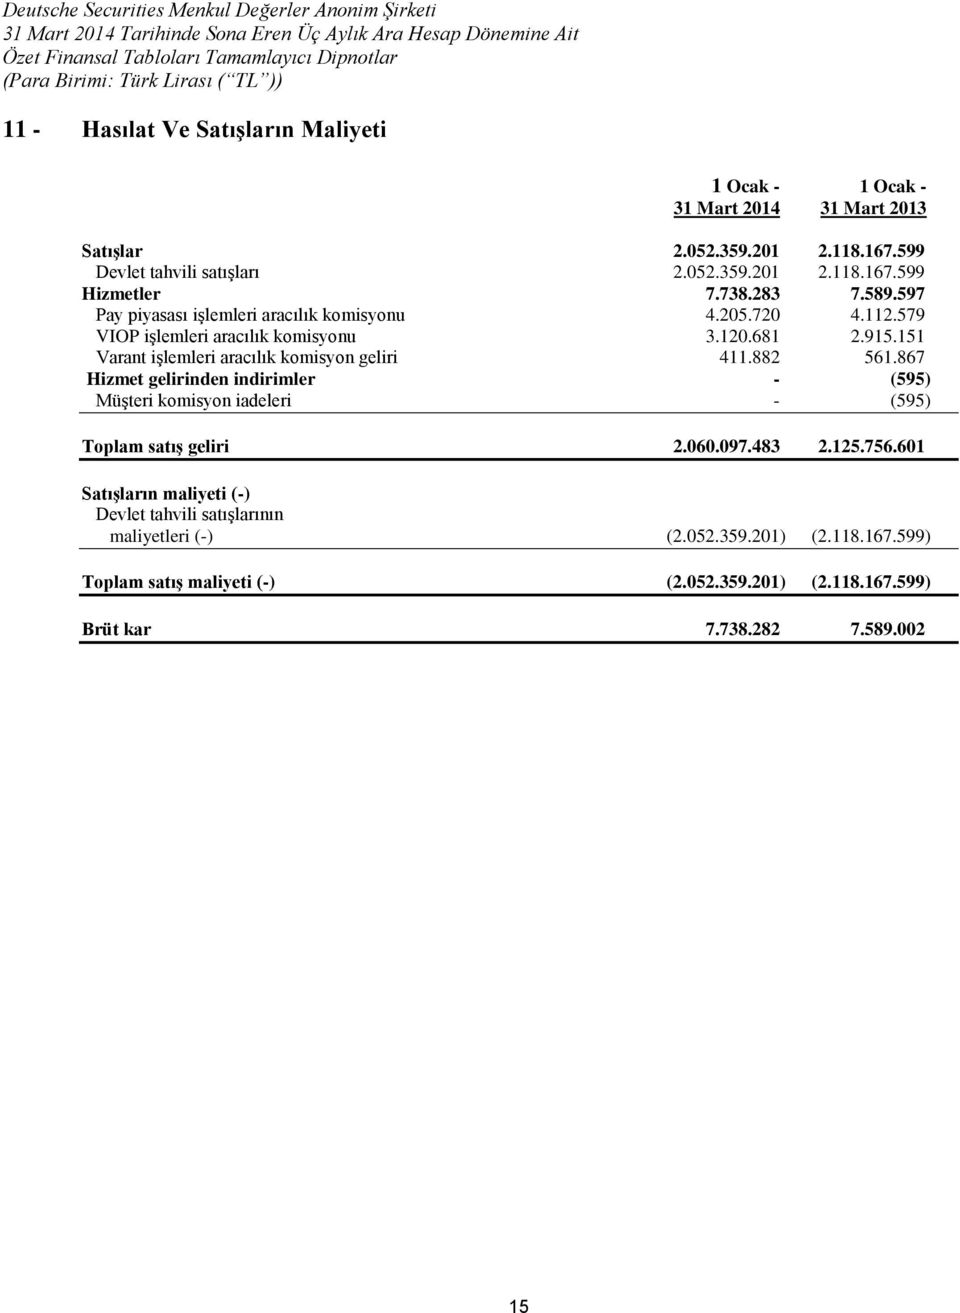 151 Varant işlemleri aracılık komisyon geliri 411.882 561.867 Hizmet gelirinden indirimler - (595) Müşteri komisyon iadeleri - (595) Toplam satış geliri 2.060.097.483 2.